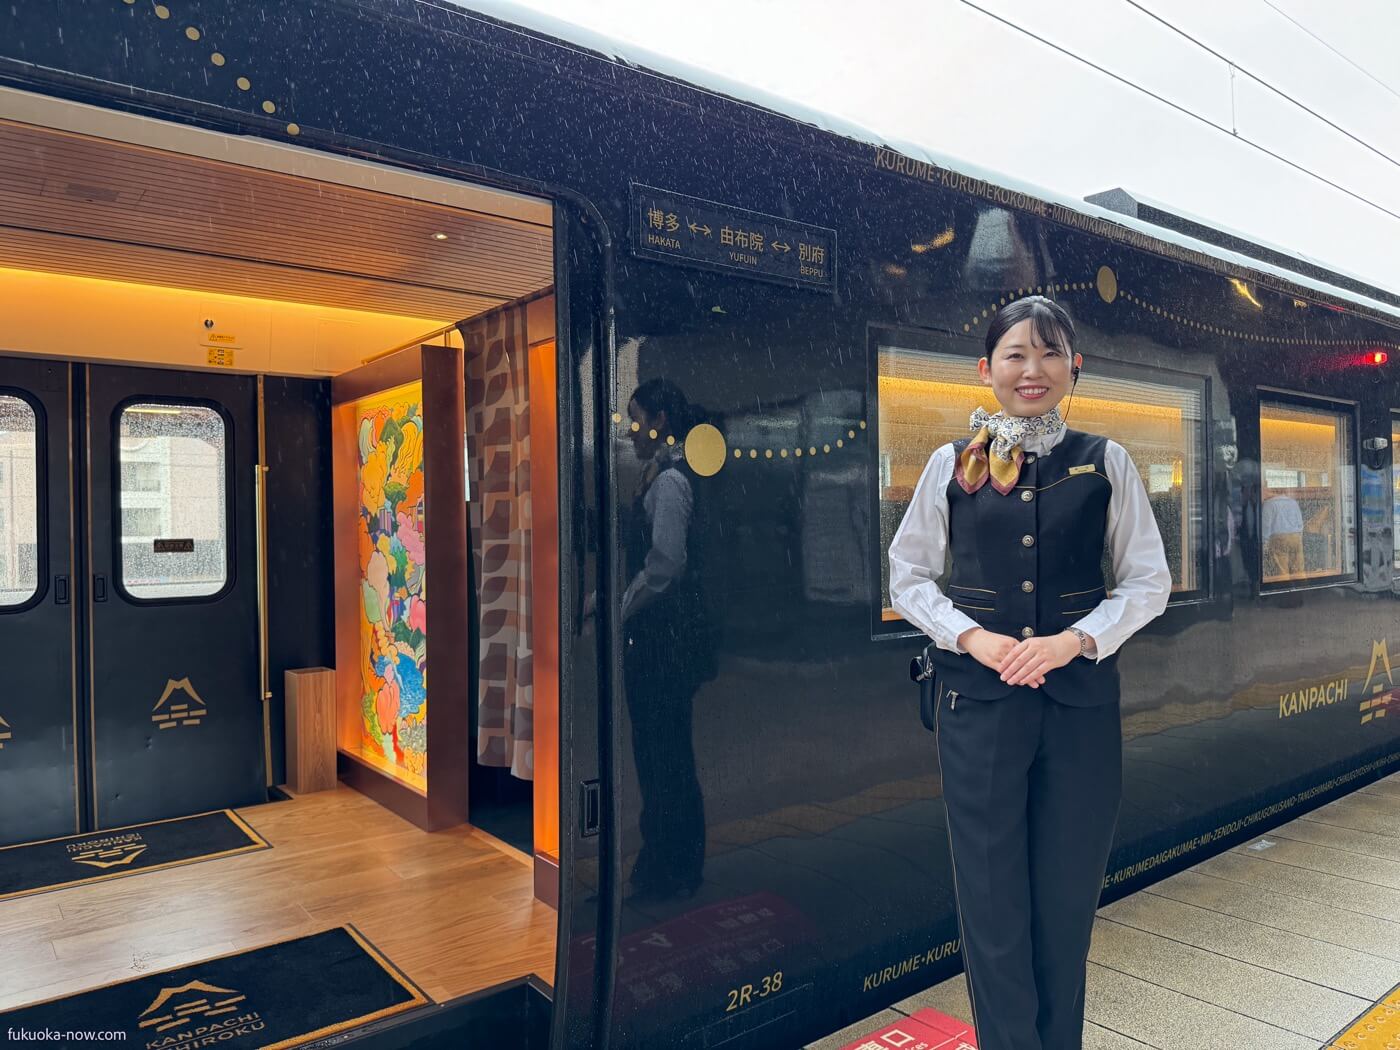 Kanpachi Ichiroku, 博多から由布院、別府へと誘う観光列車「かんぱち・いちろく」